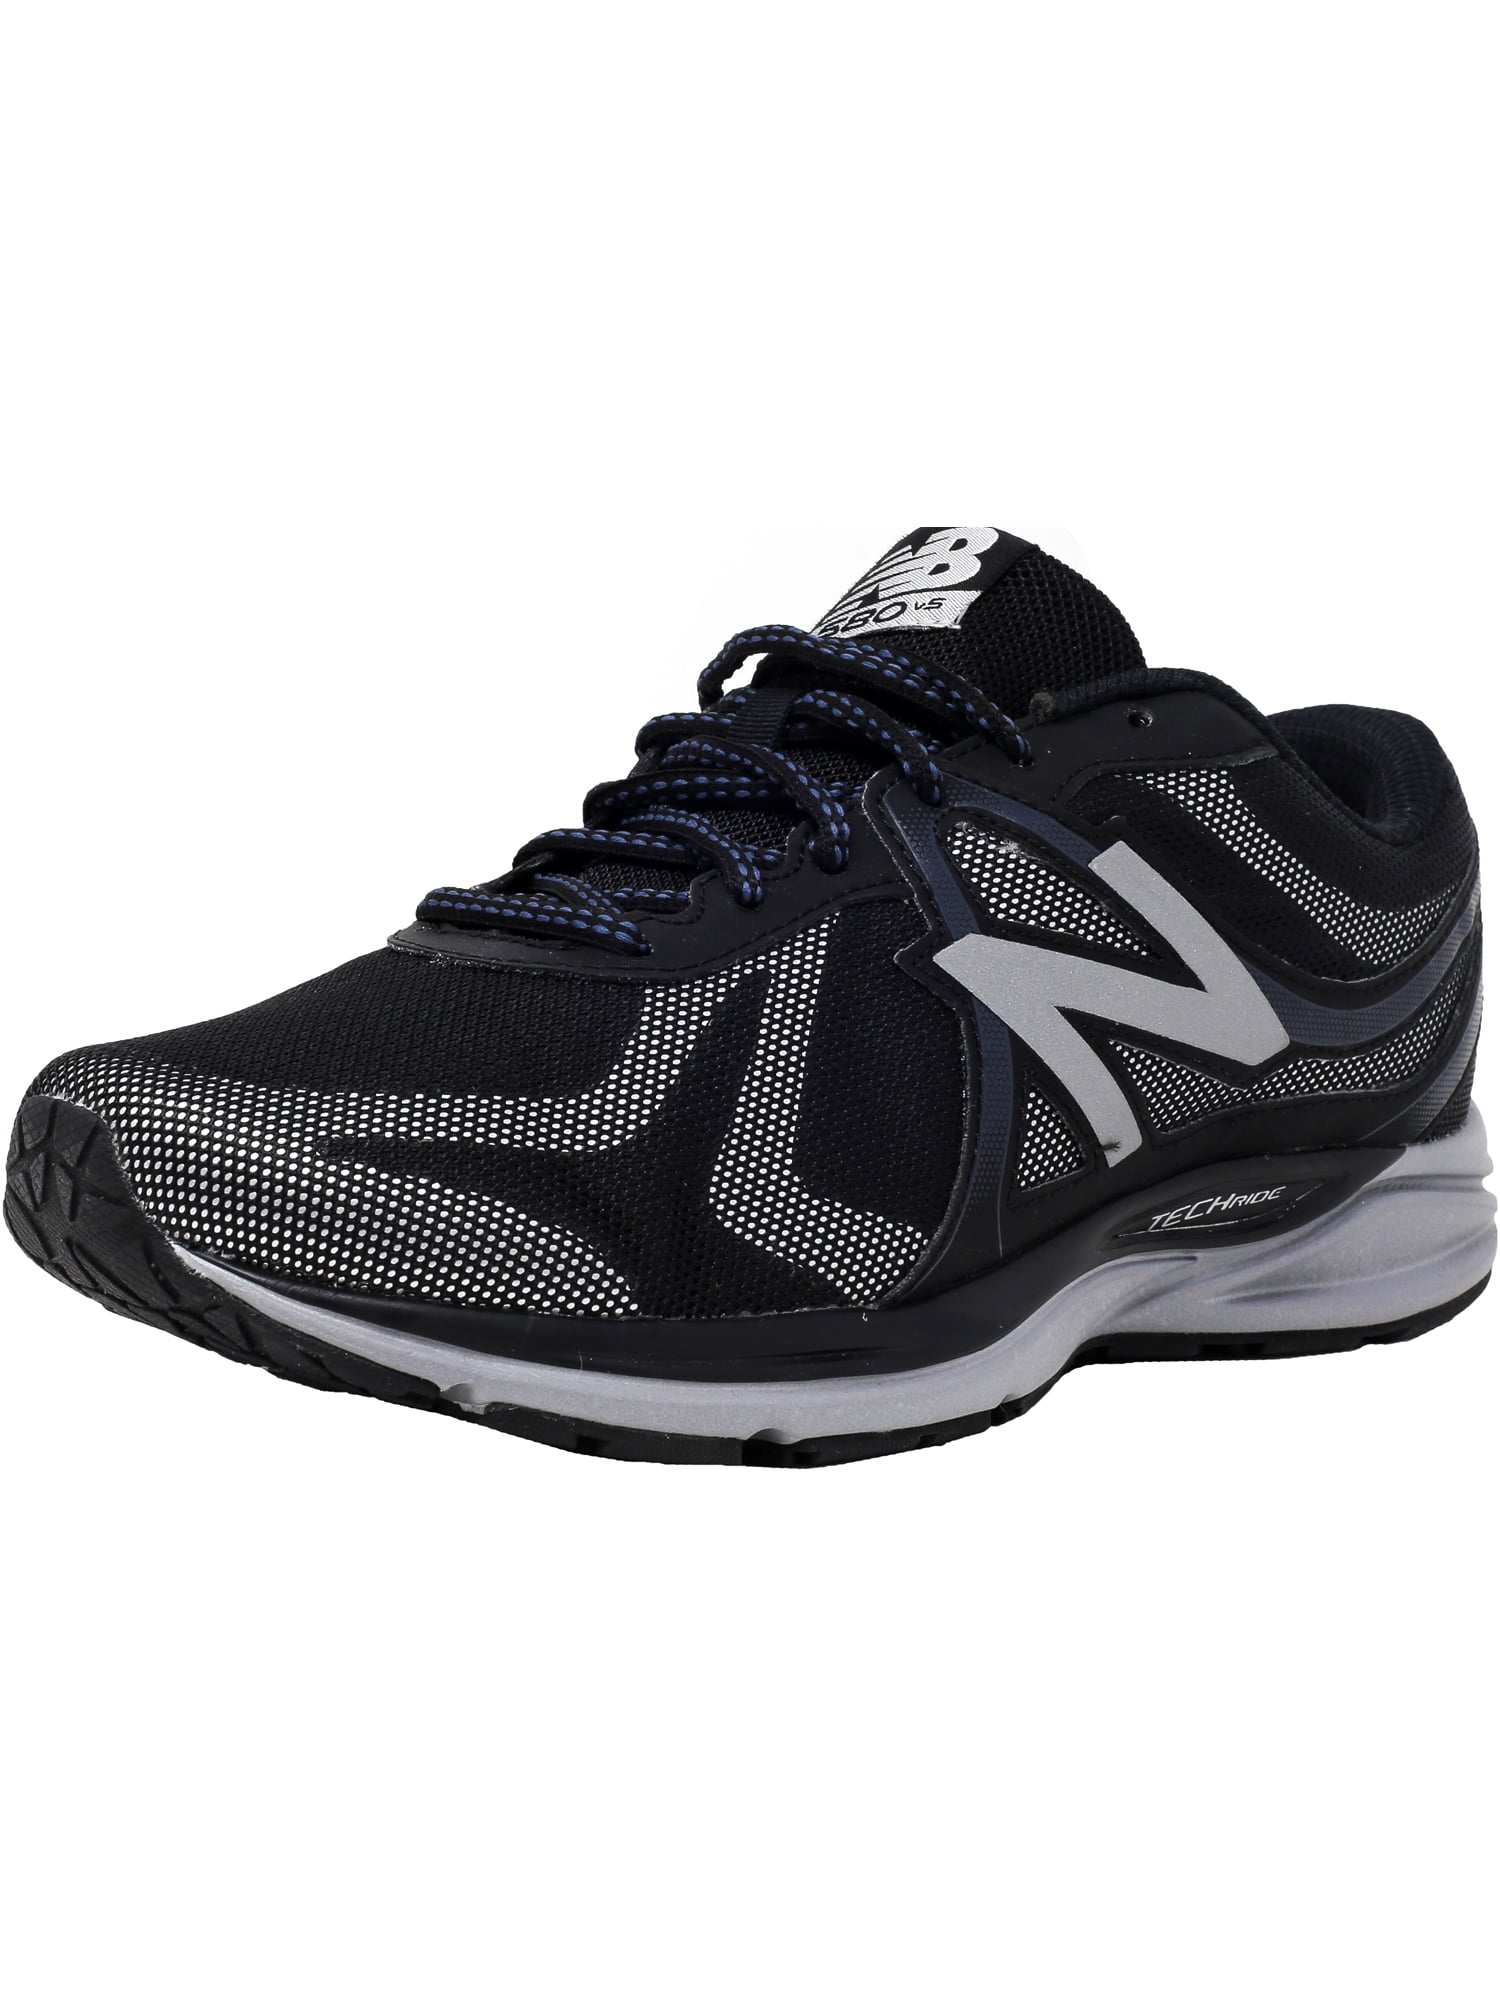 new balance men's m580 running shoe